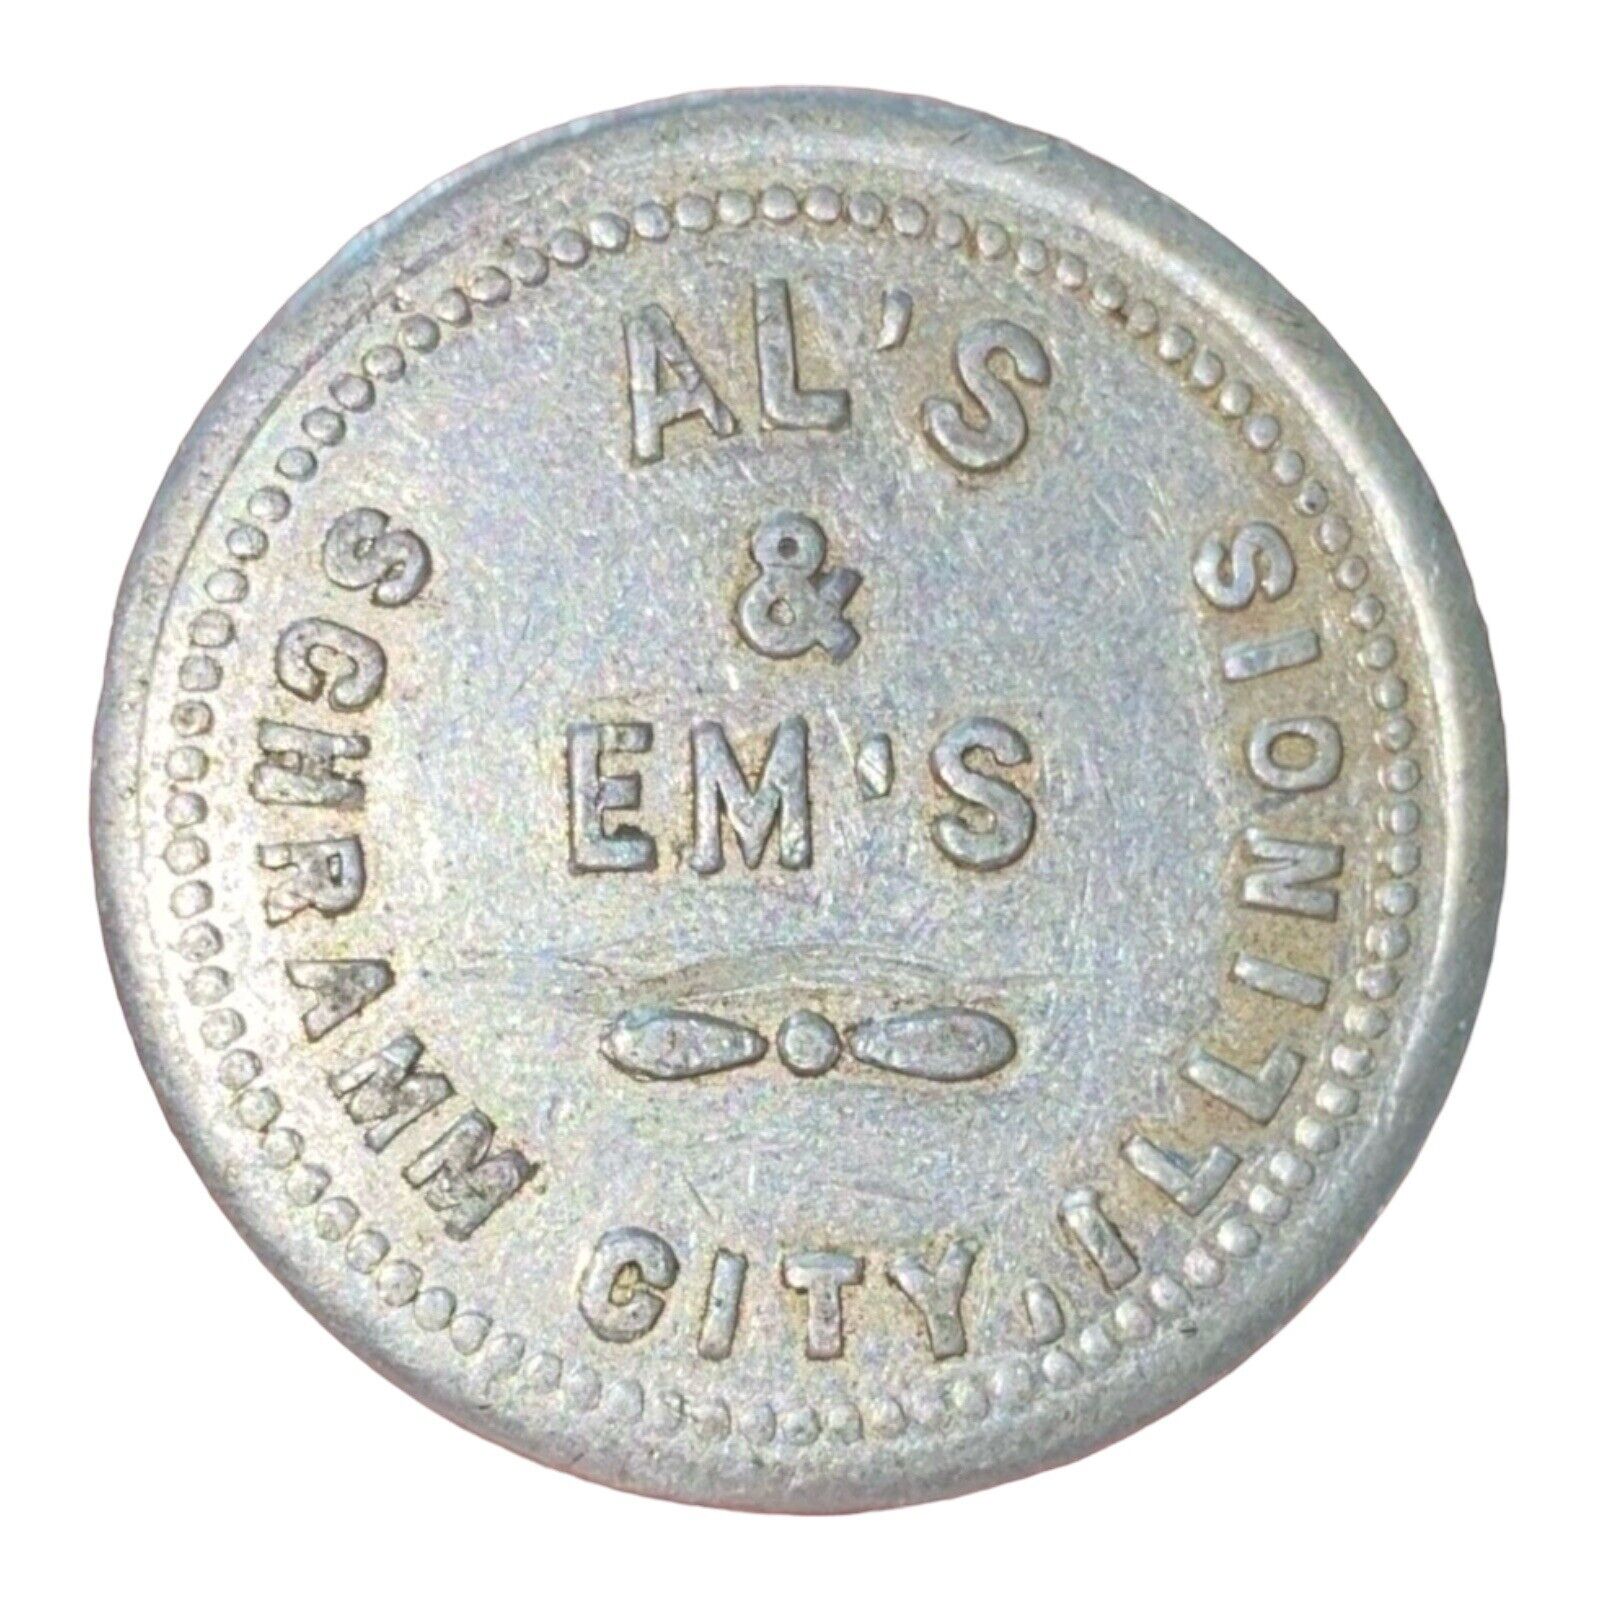 Vintage Al’s & Em’s Token Coin 5 Cents In MDSE Schramm City, IL Illinois 552